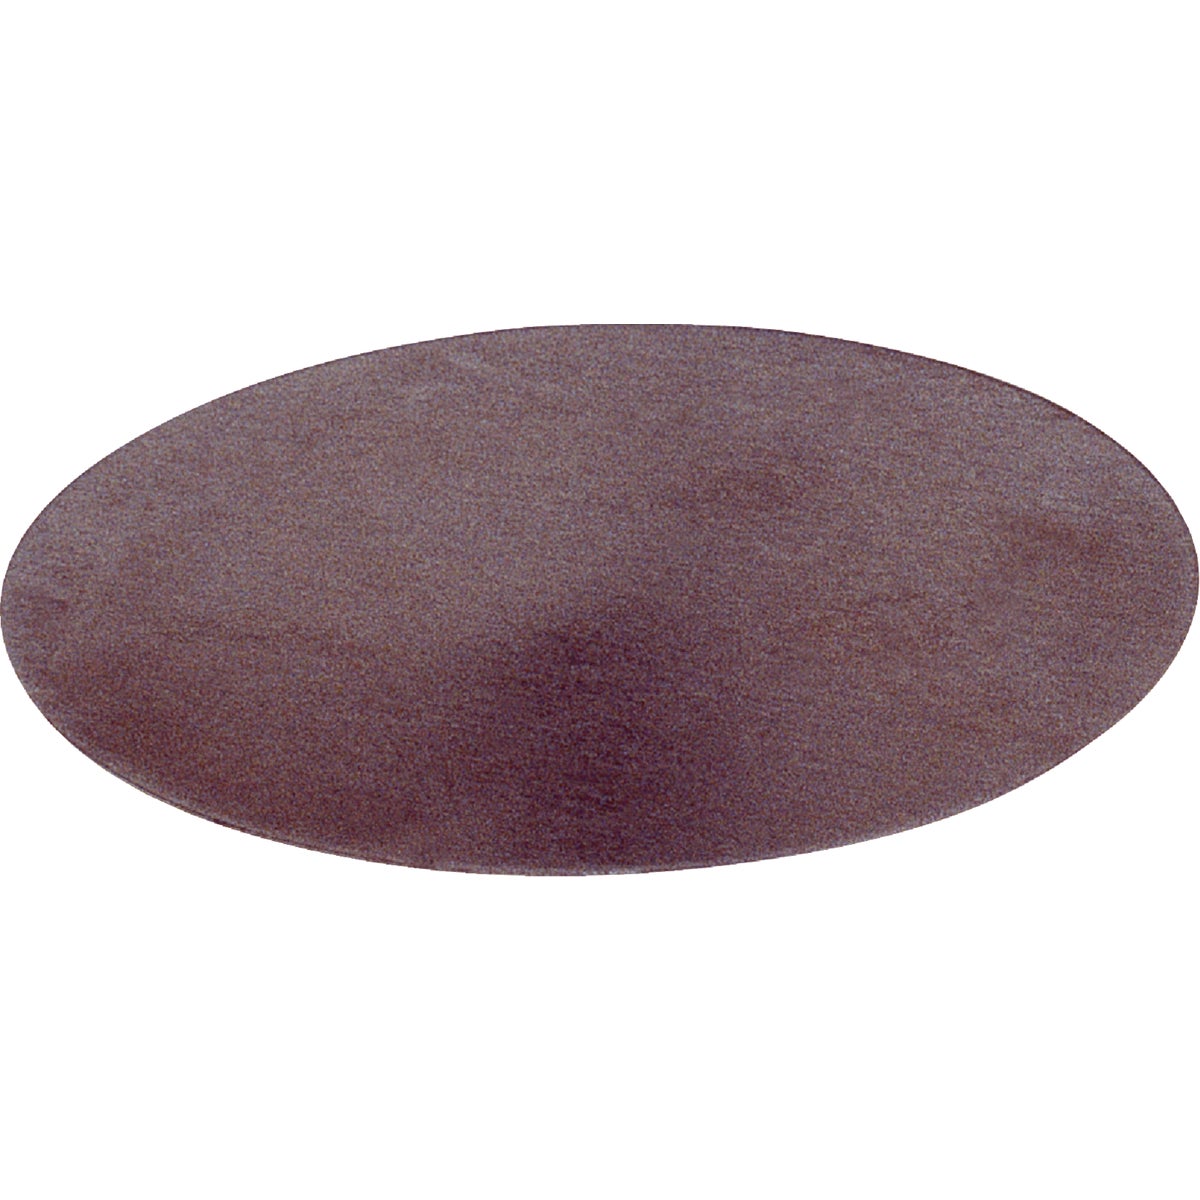 Item 748308, 2-1/2" diameter metal cap tab.